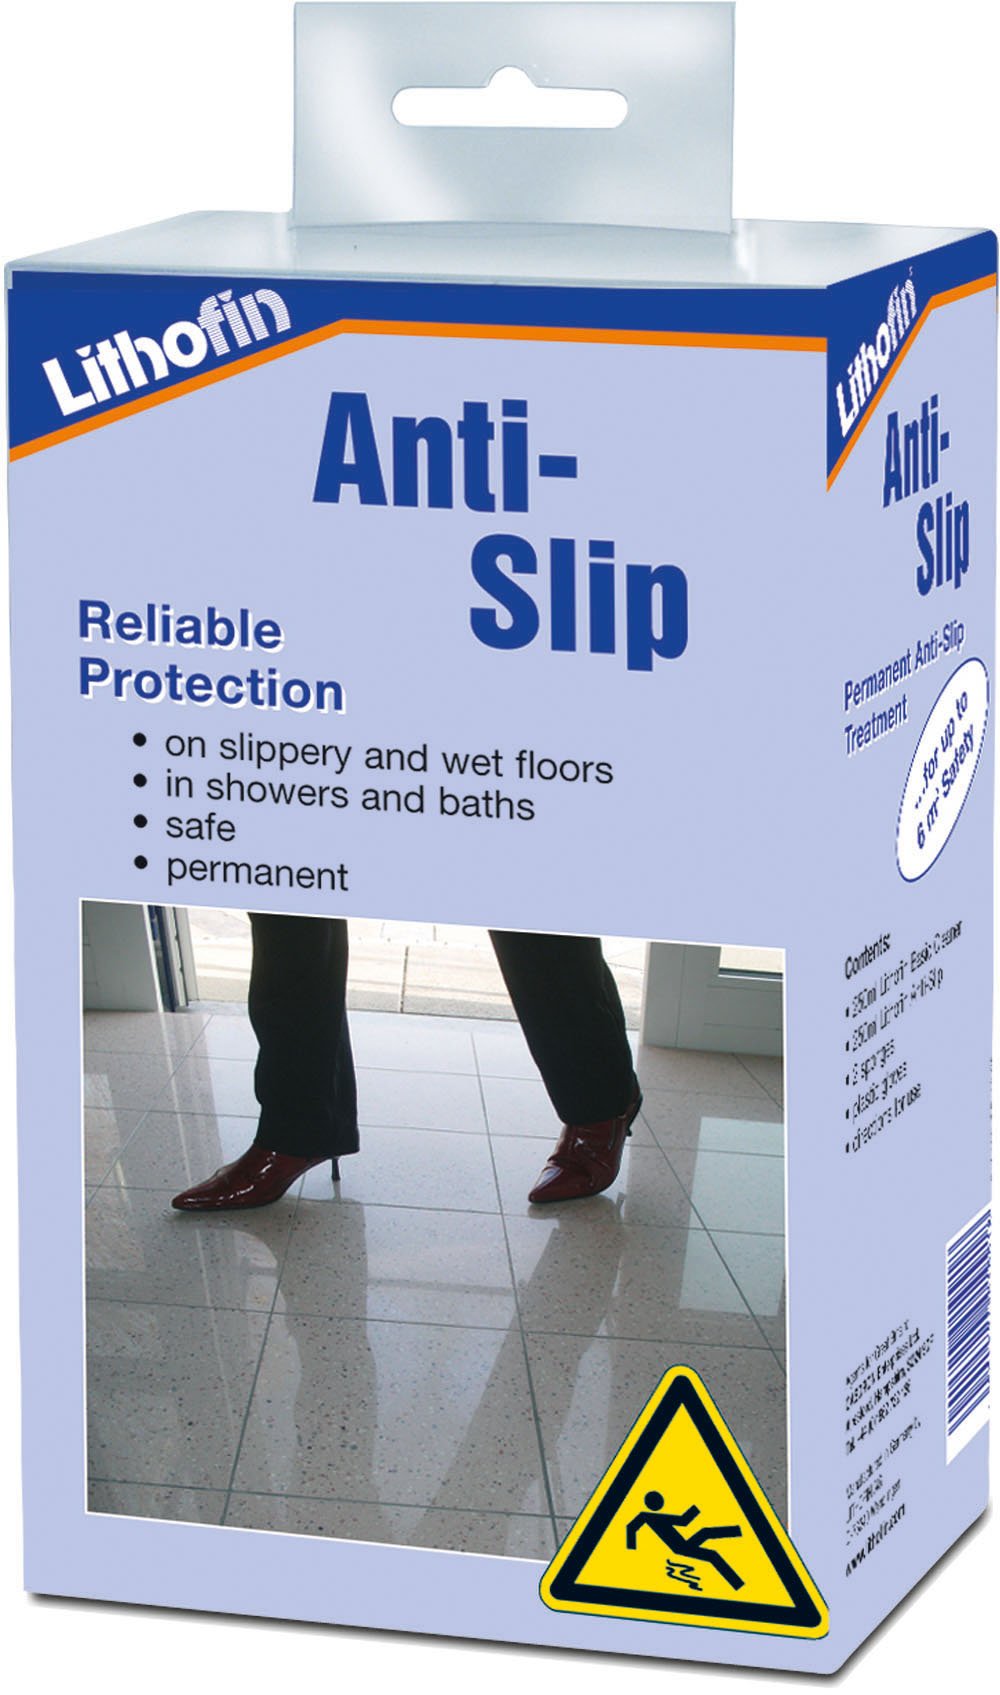 Lithofin Anti-Slip for slippery and wet floors 